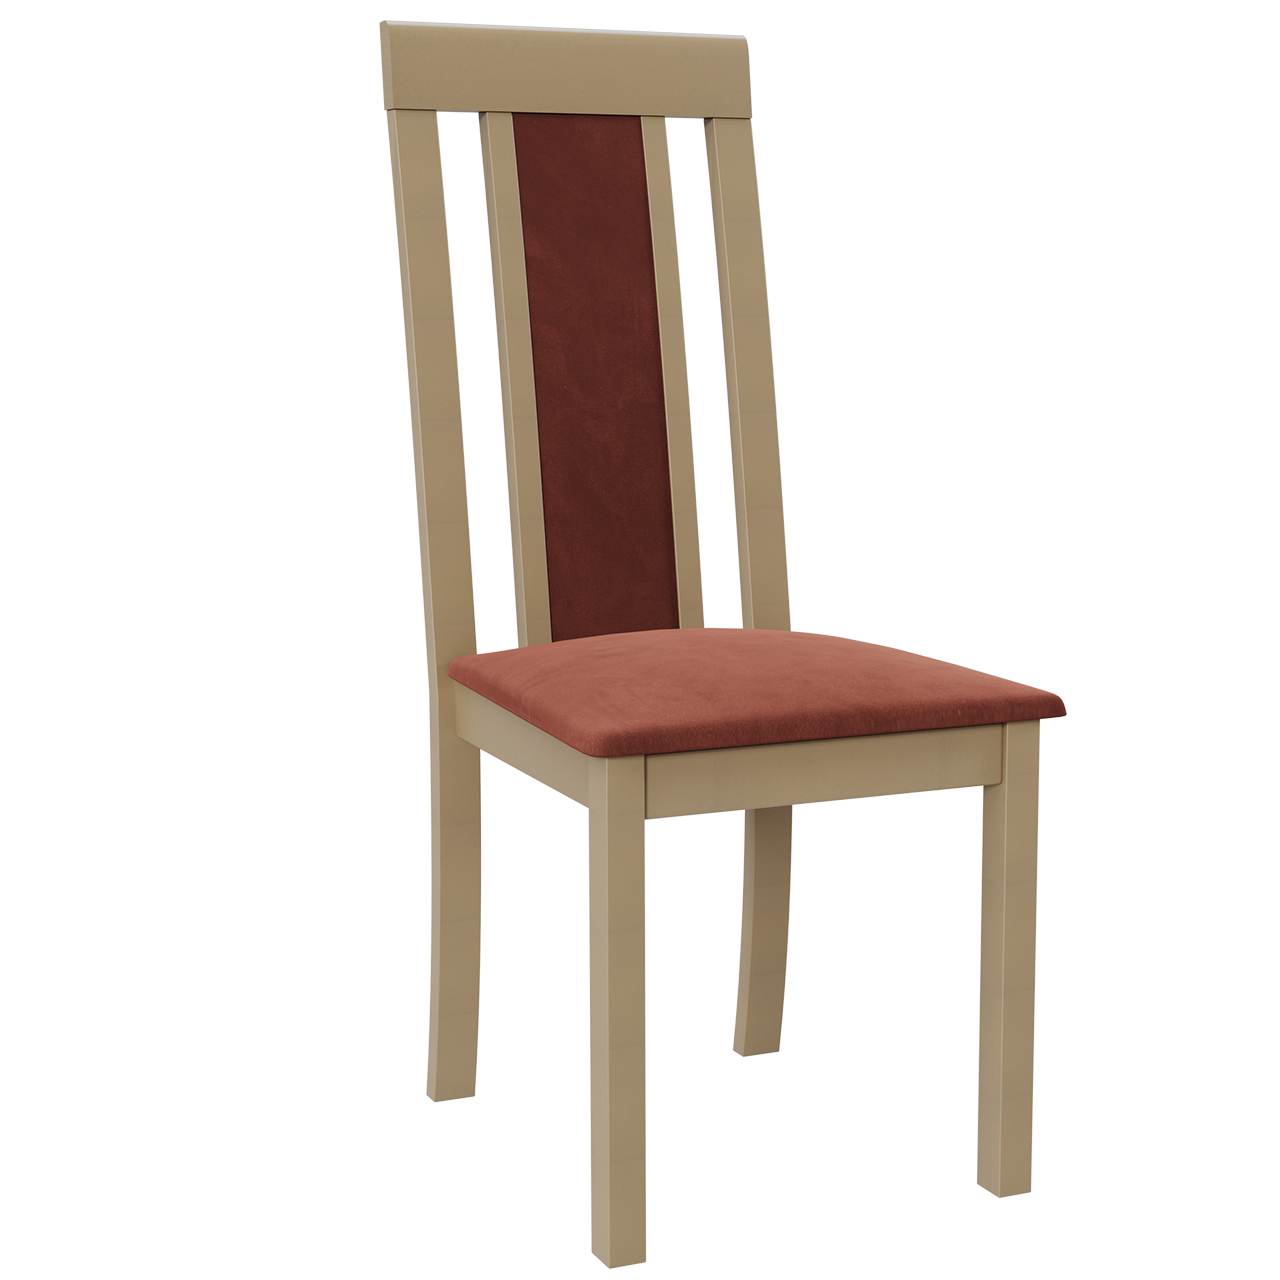 Chair ROMA 11 sonoma / 19B